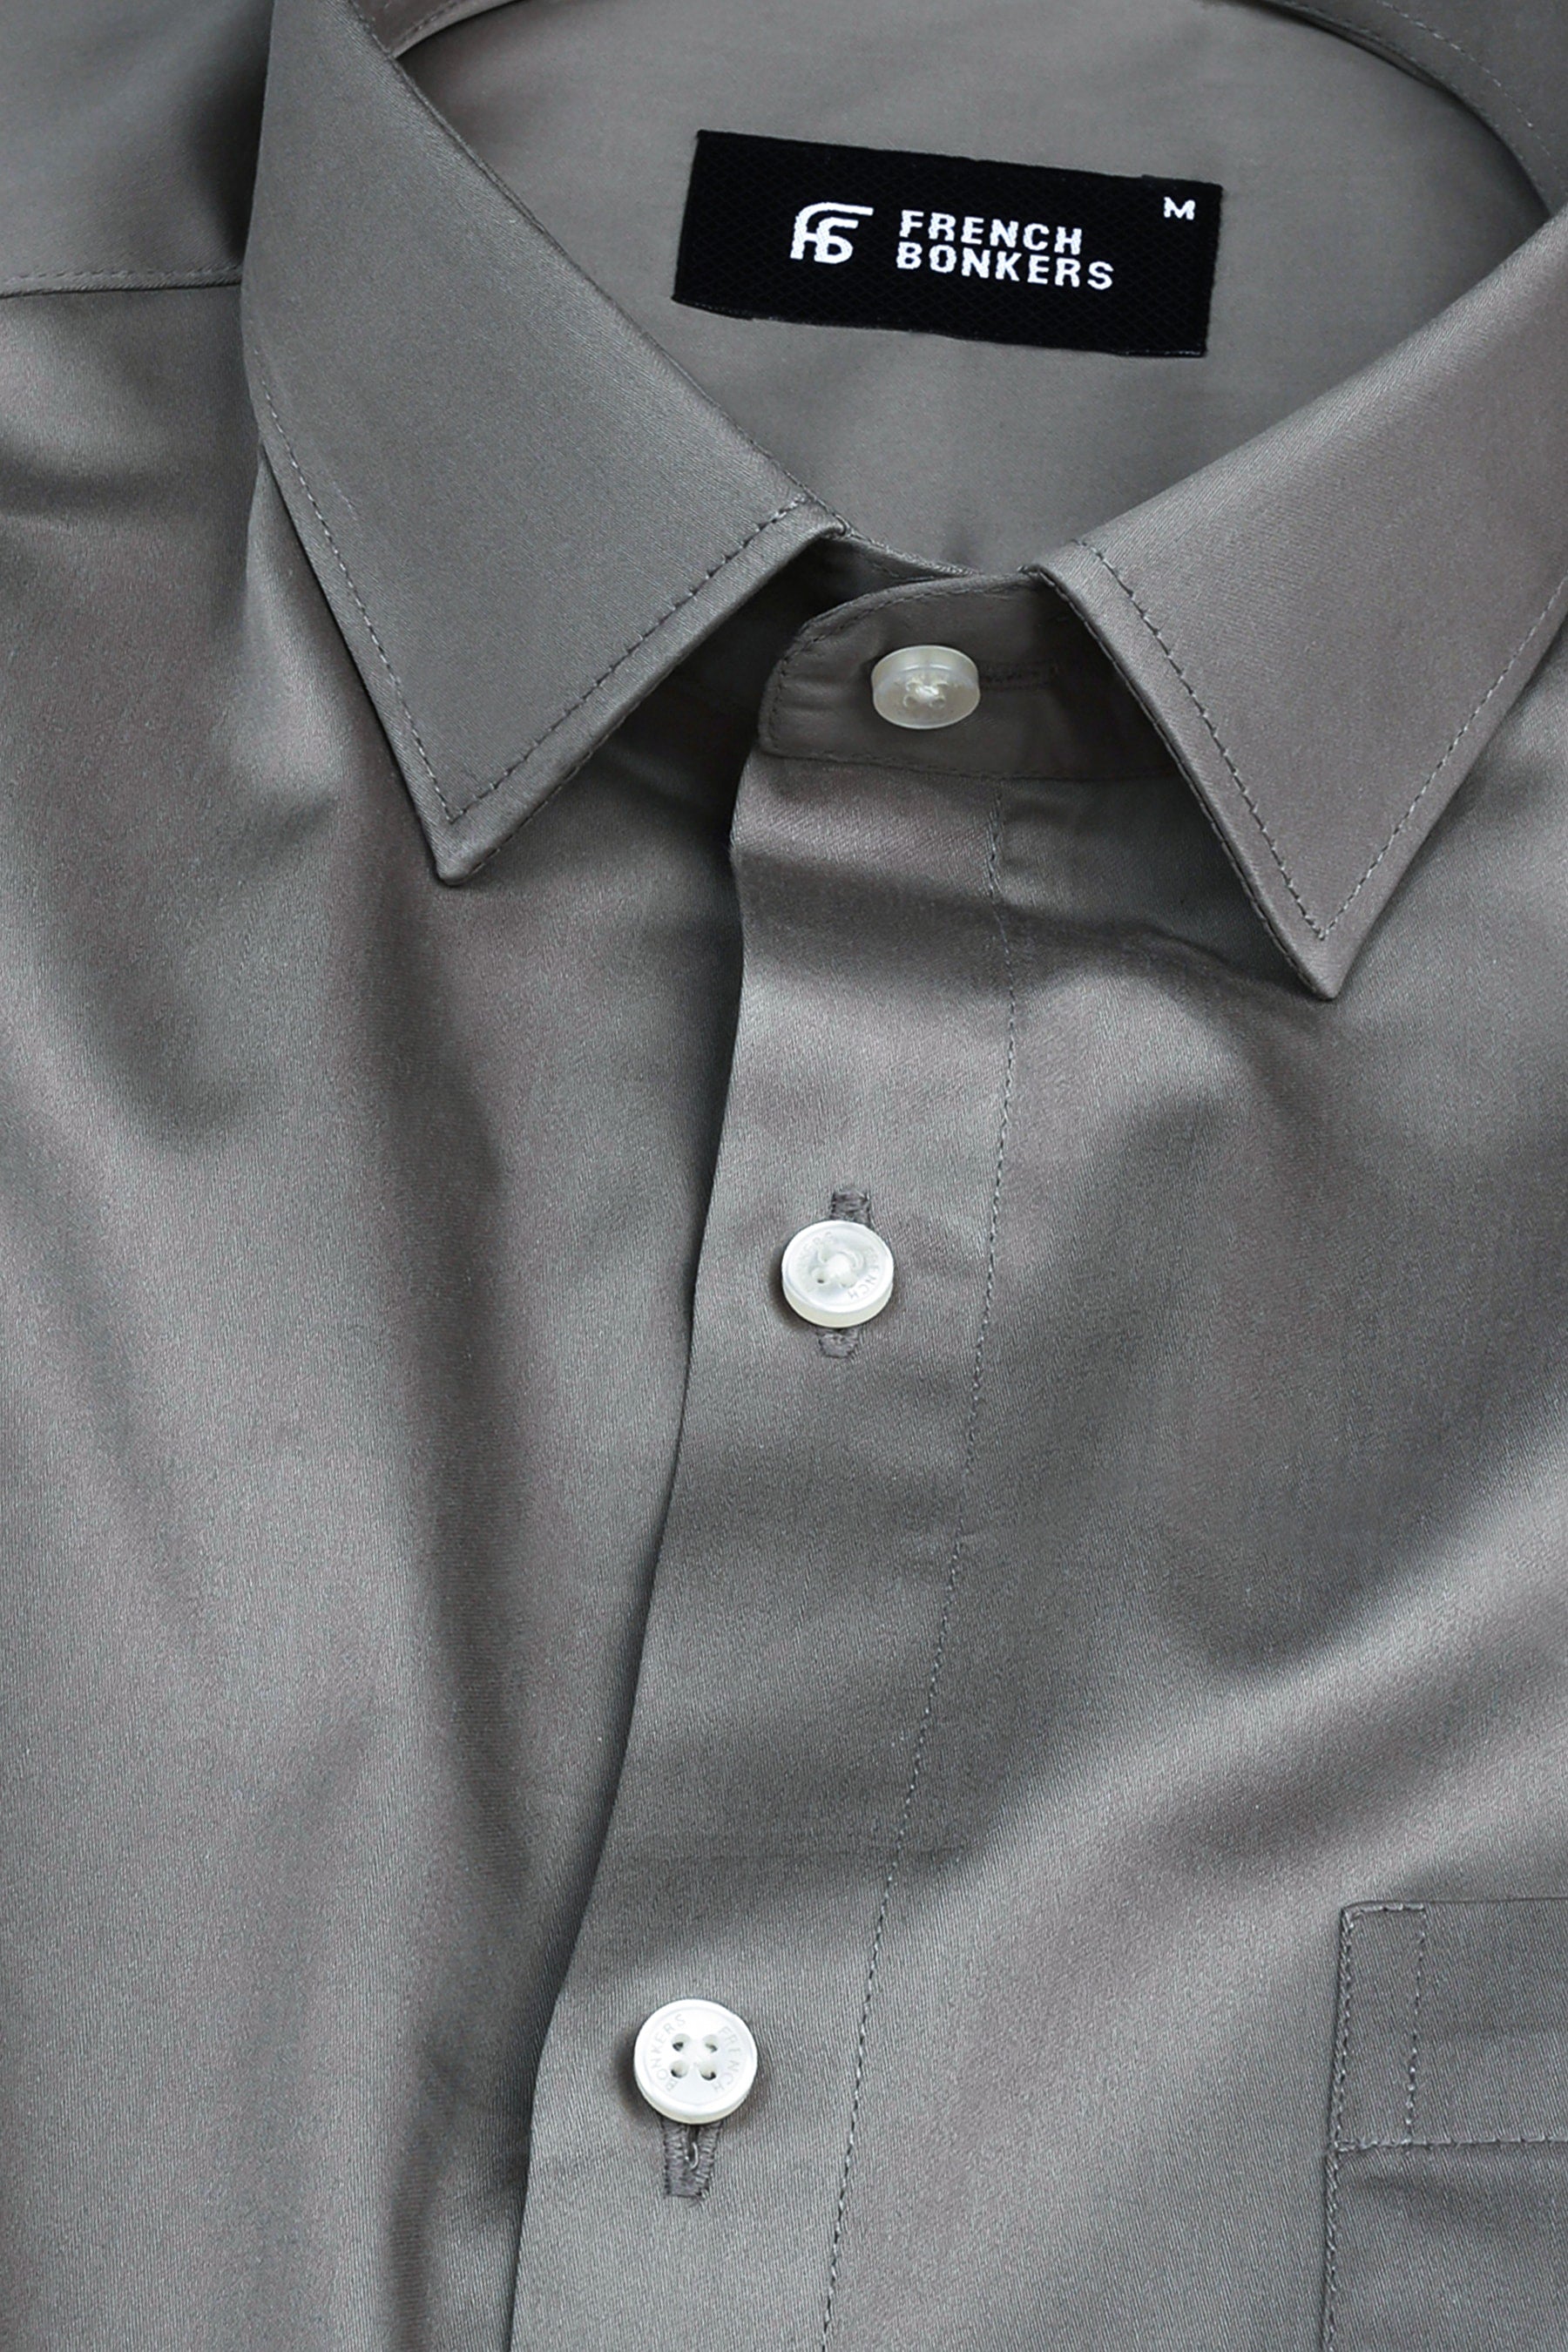 Platinum grey cotton satin shirt